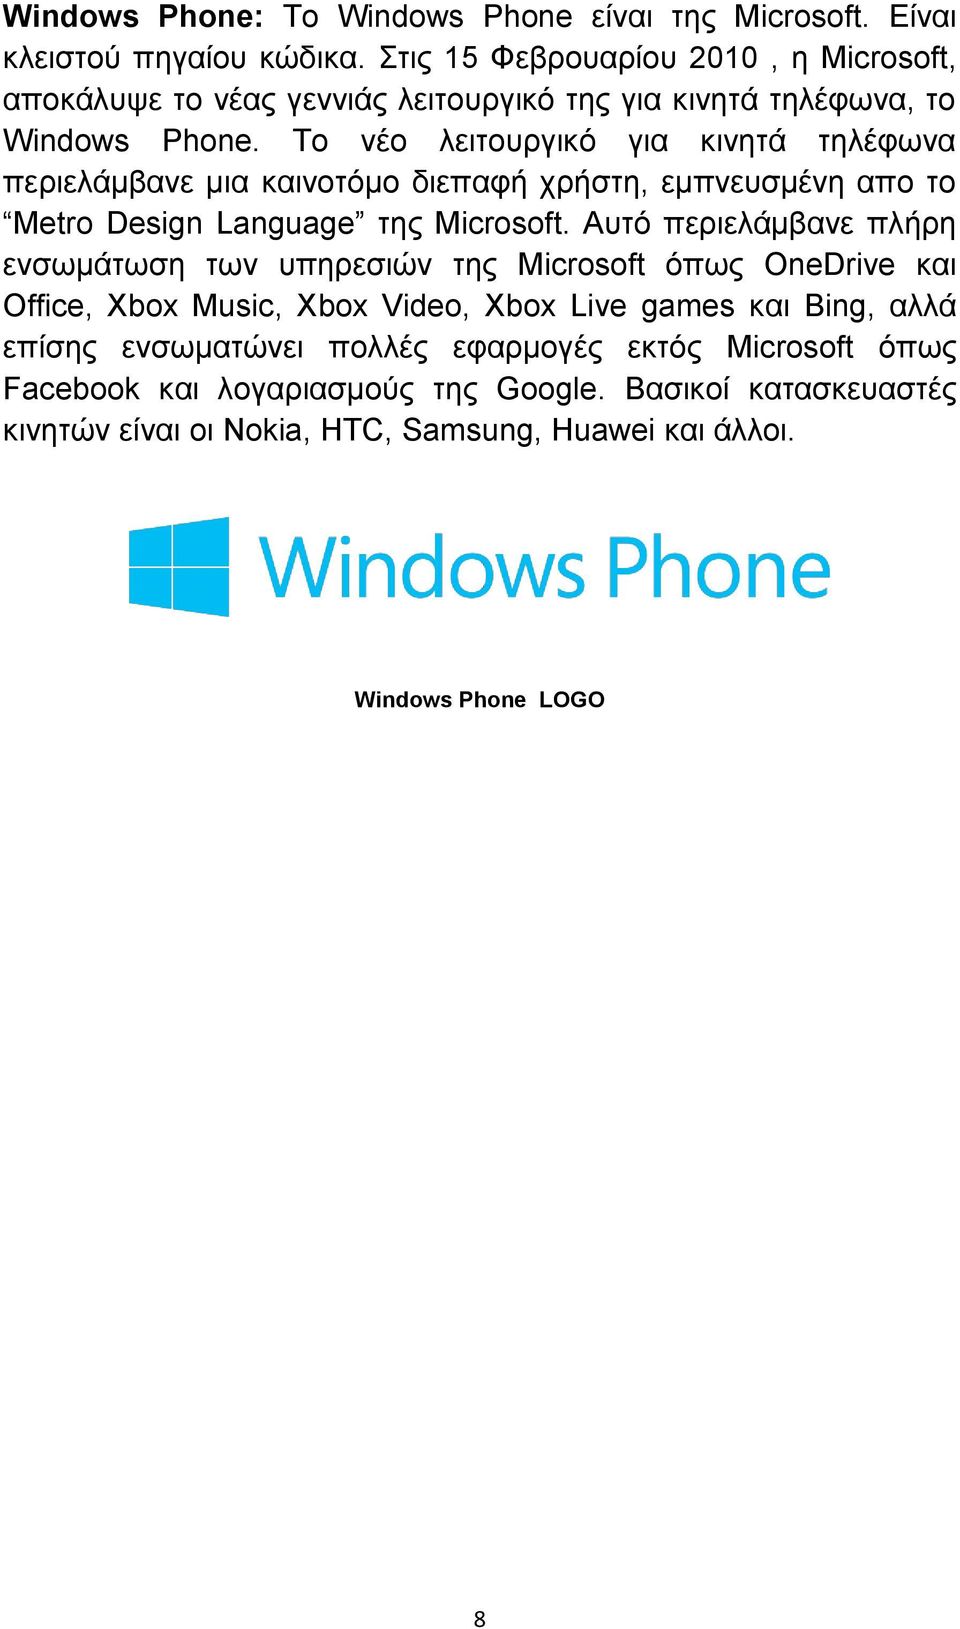 Το νέο λειτουργικό για κινητά τηλέφωνα περιελάμβανε μια καινοτόμο διεπαφή χρήστη, εμπνευσμένη απο το Metro Design Language της Microsoft.